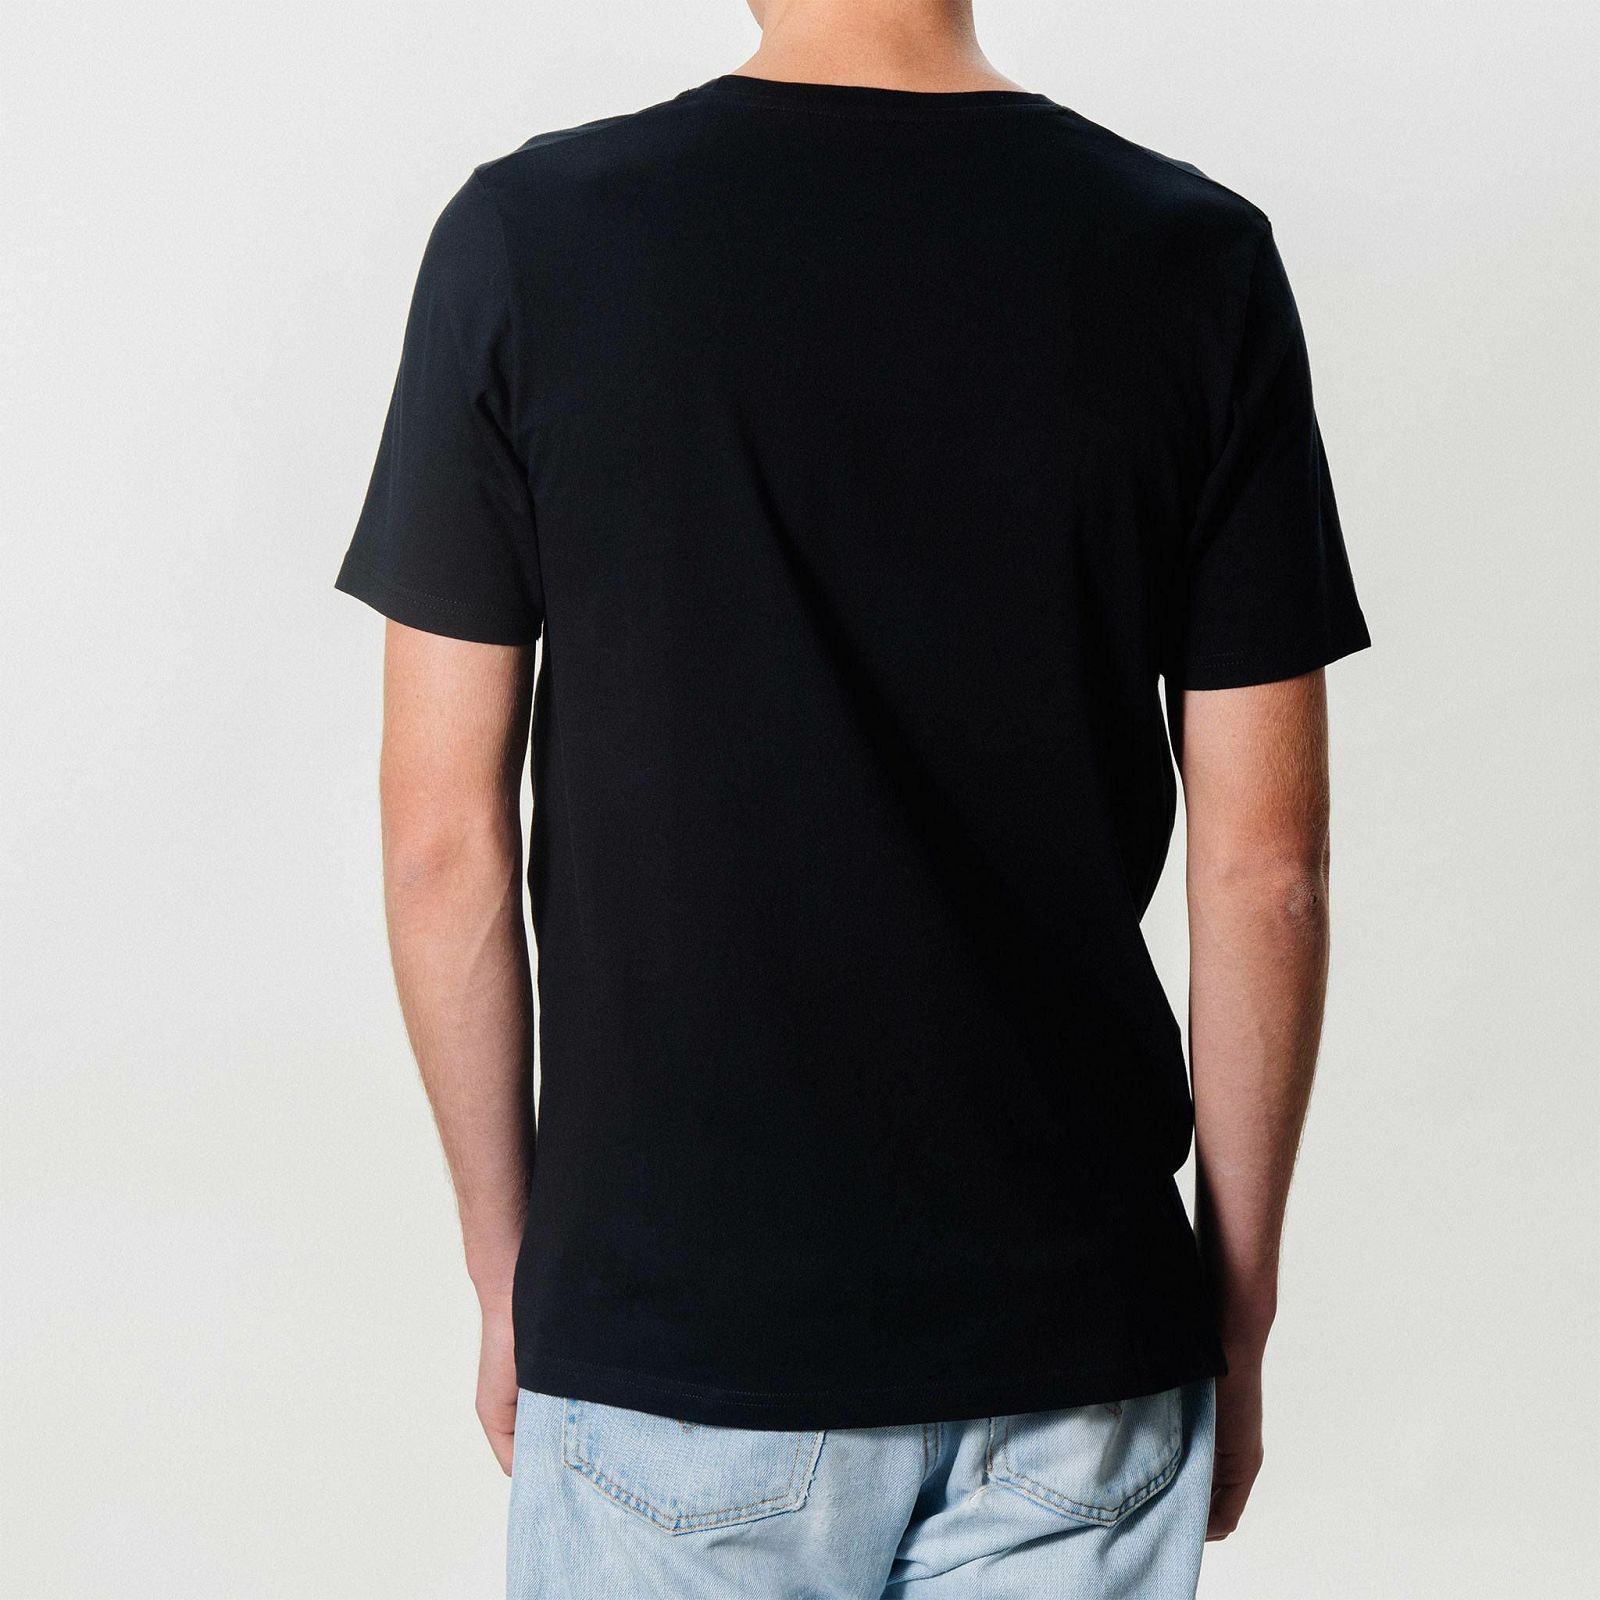 Polaroid Originals Black T-Shirt Color Logo L majica (004768)